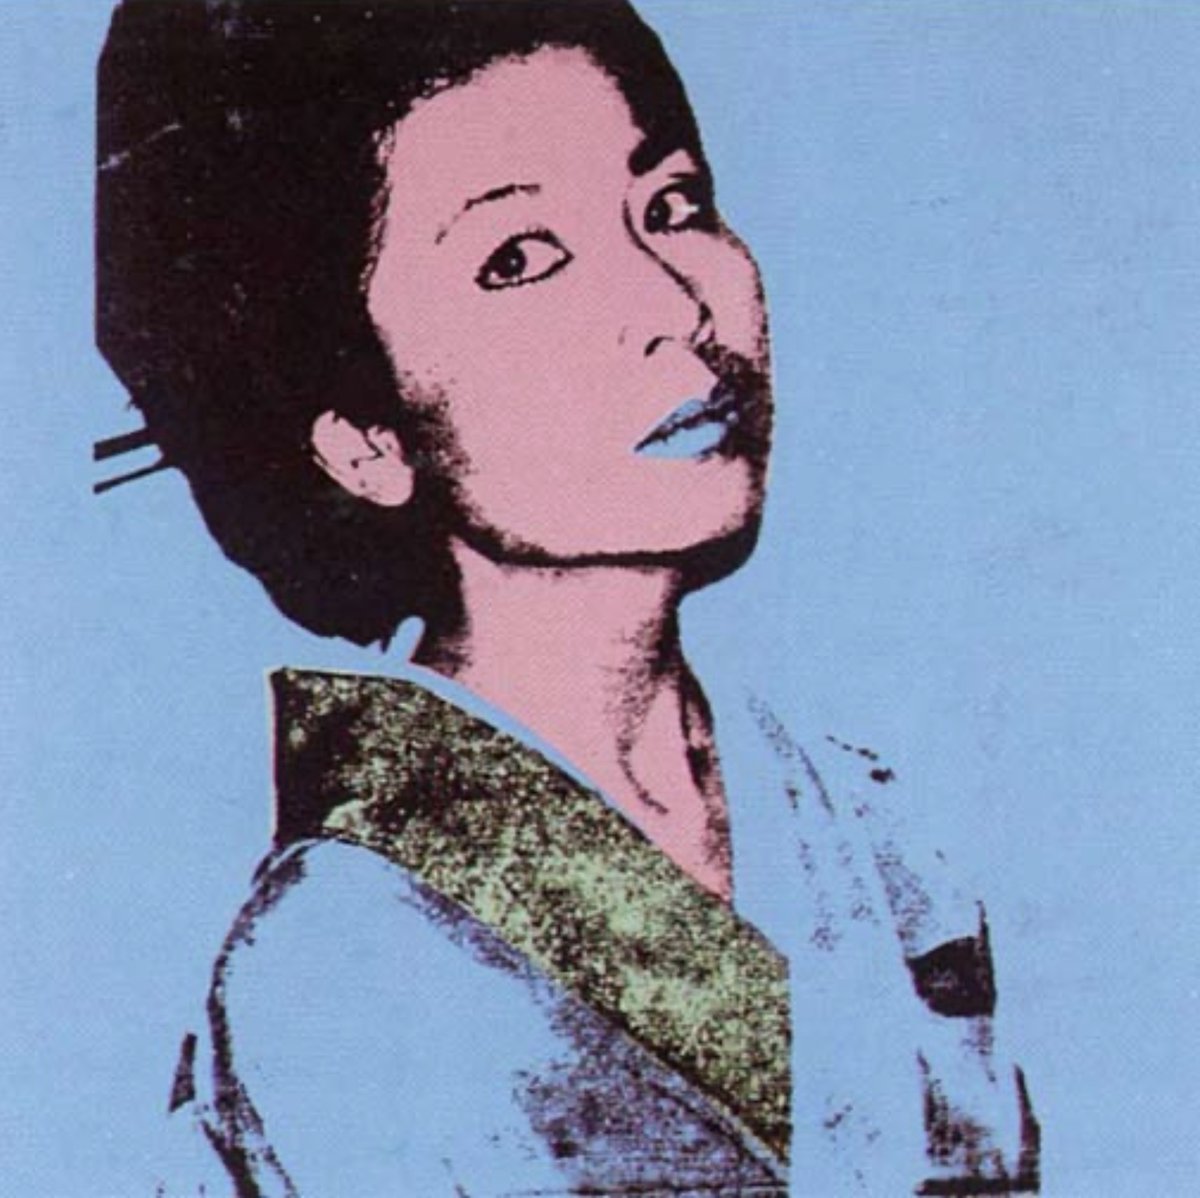 Andy Warhol - Kimiko (1981)
#andywarhol #warhol